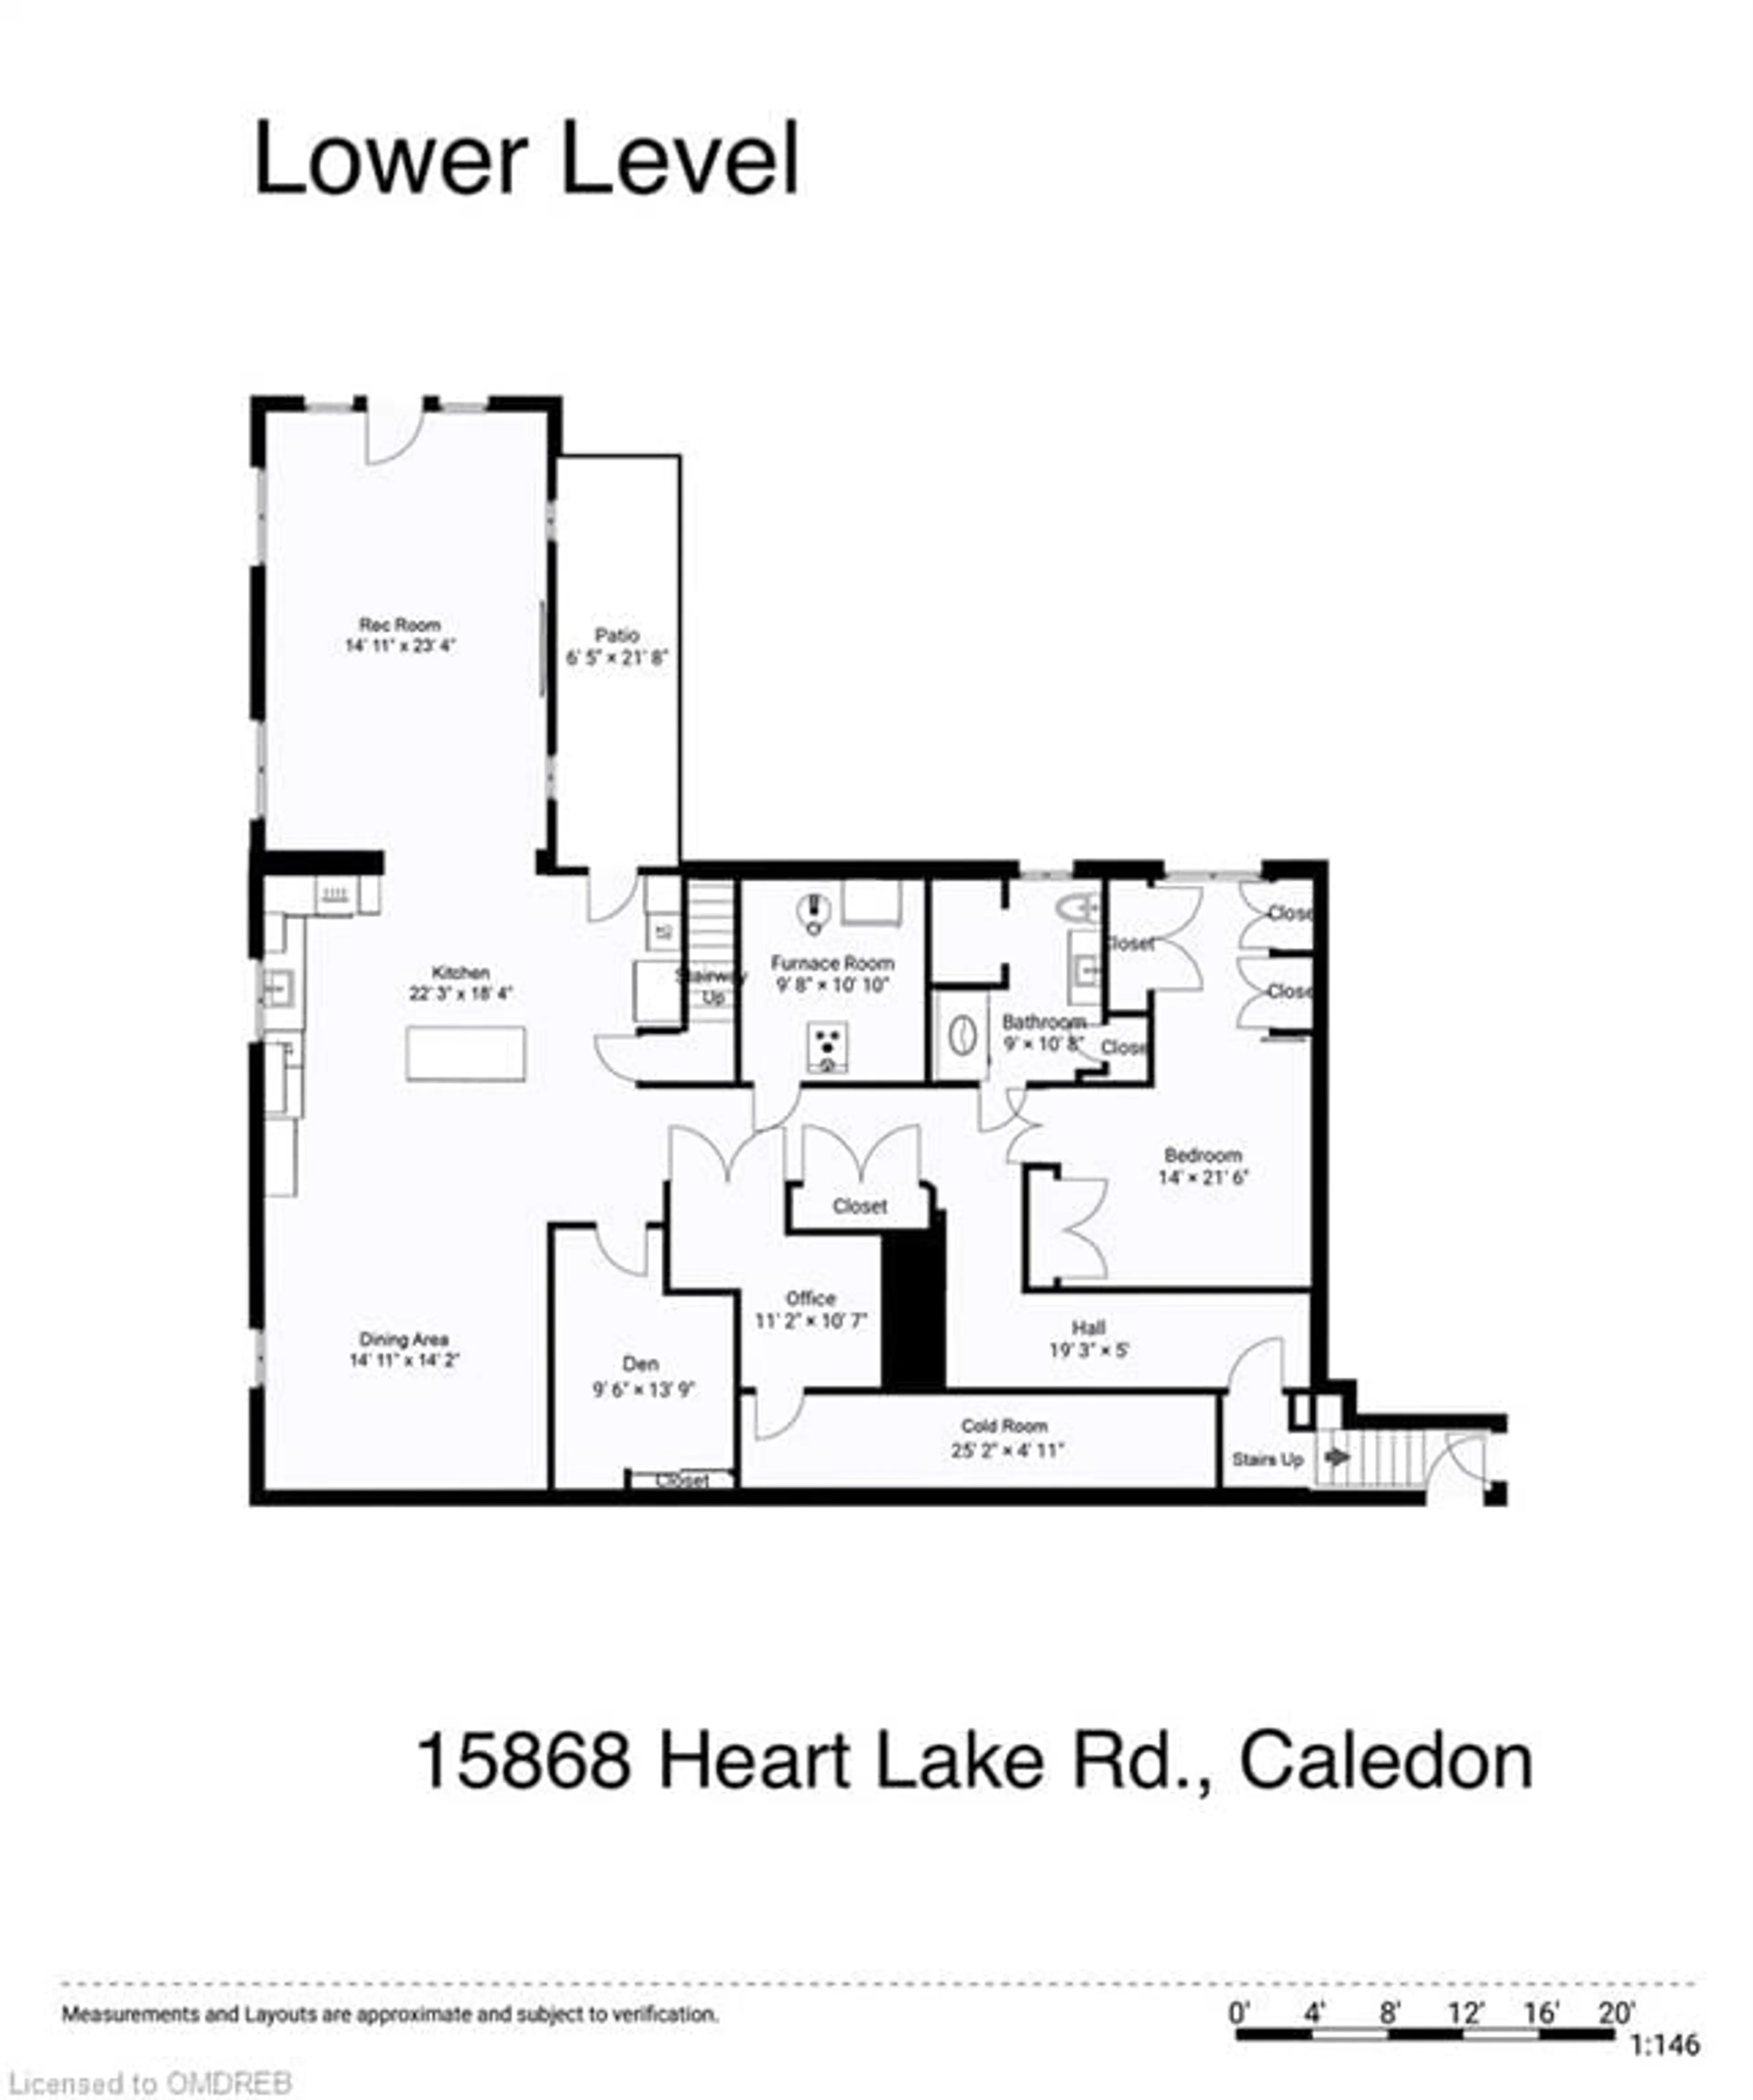 Floor plan for 15868 Heart Lake Rd, Caledon Ontario L7C 2J9